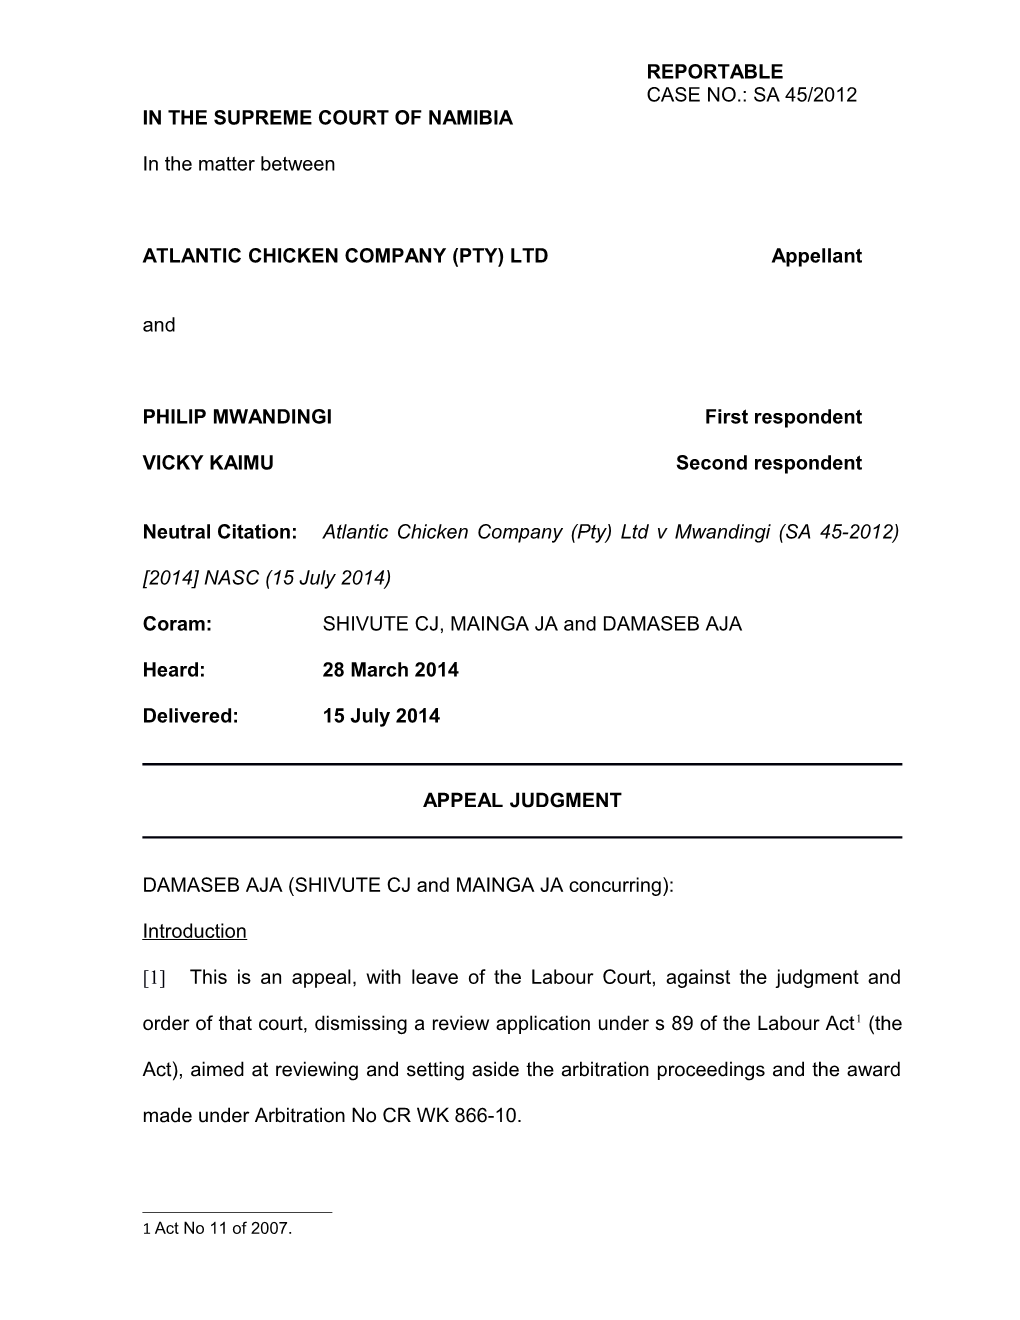 Atlantic Chicken Company (Pty) Ltd V Mwandingi (SA 45-2012) 2014 NASC (15 July 2014)